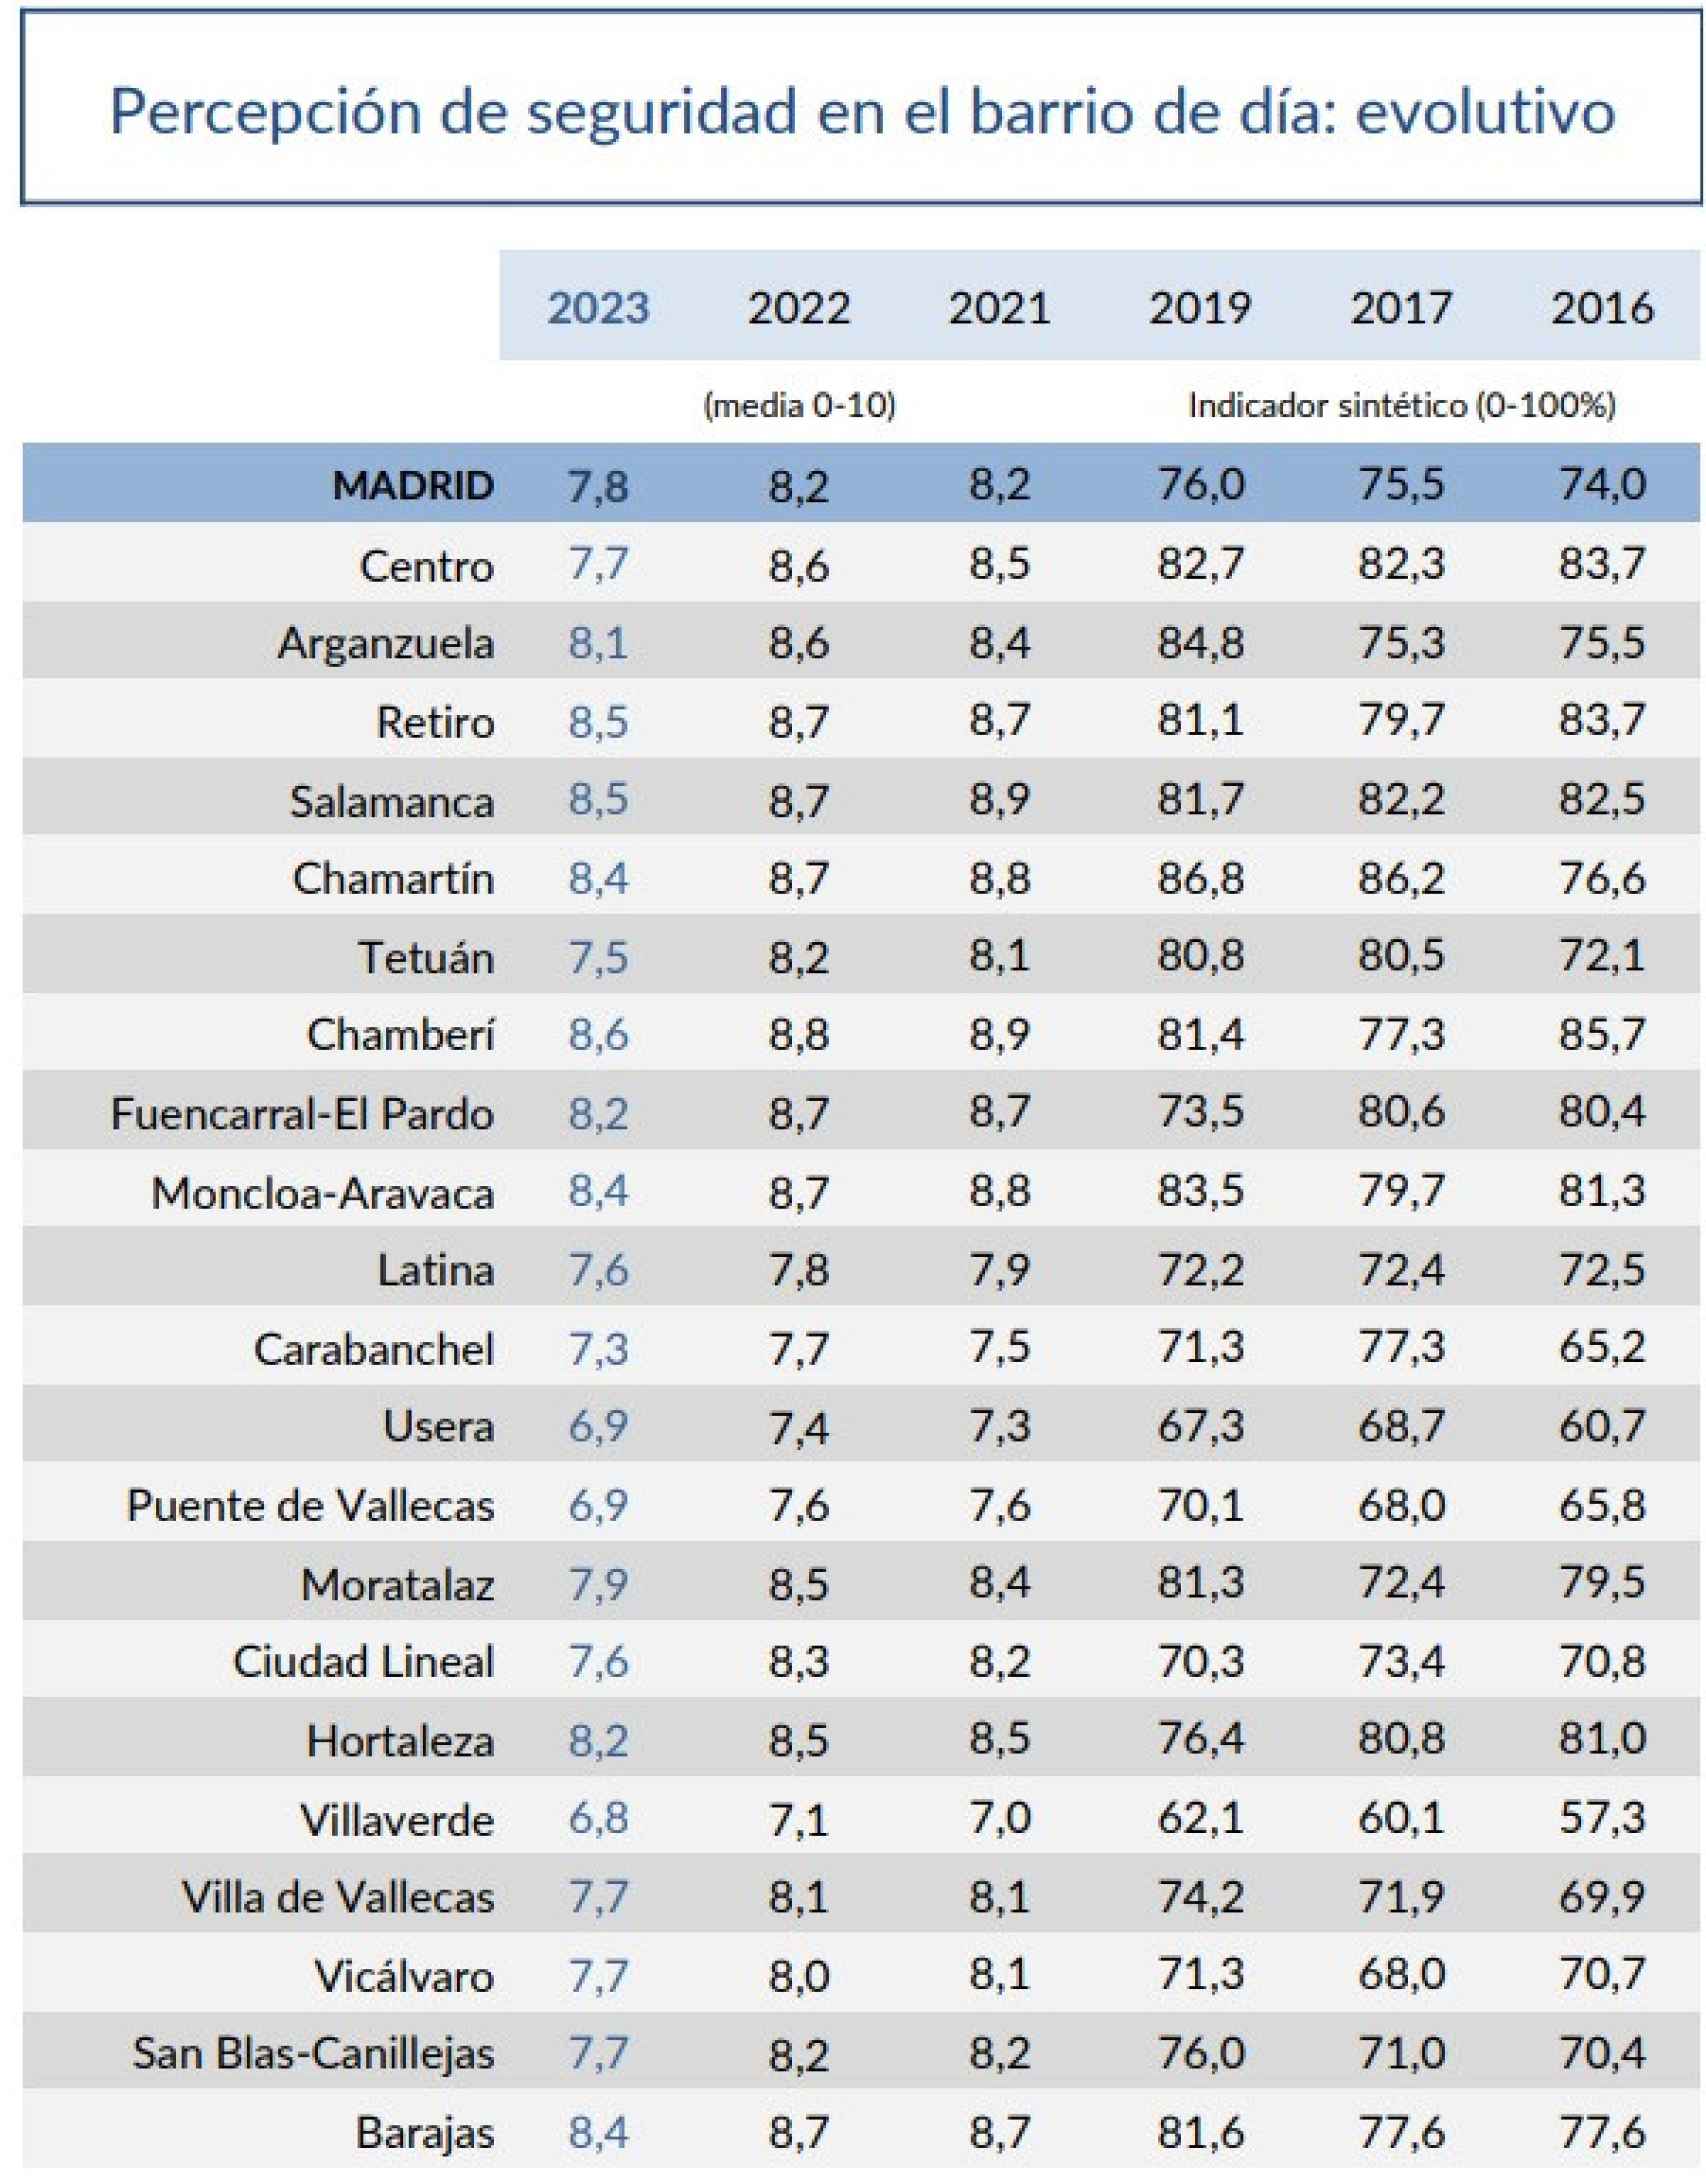 Fuente: Encuesta de Calidad de Vida y Satisfacción con los Servicios Públicos, elaborada por el Ayuntamiento de Madrid